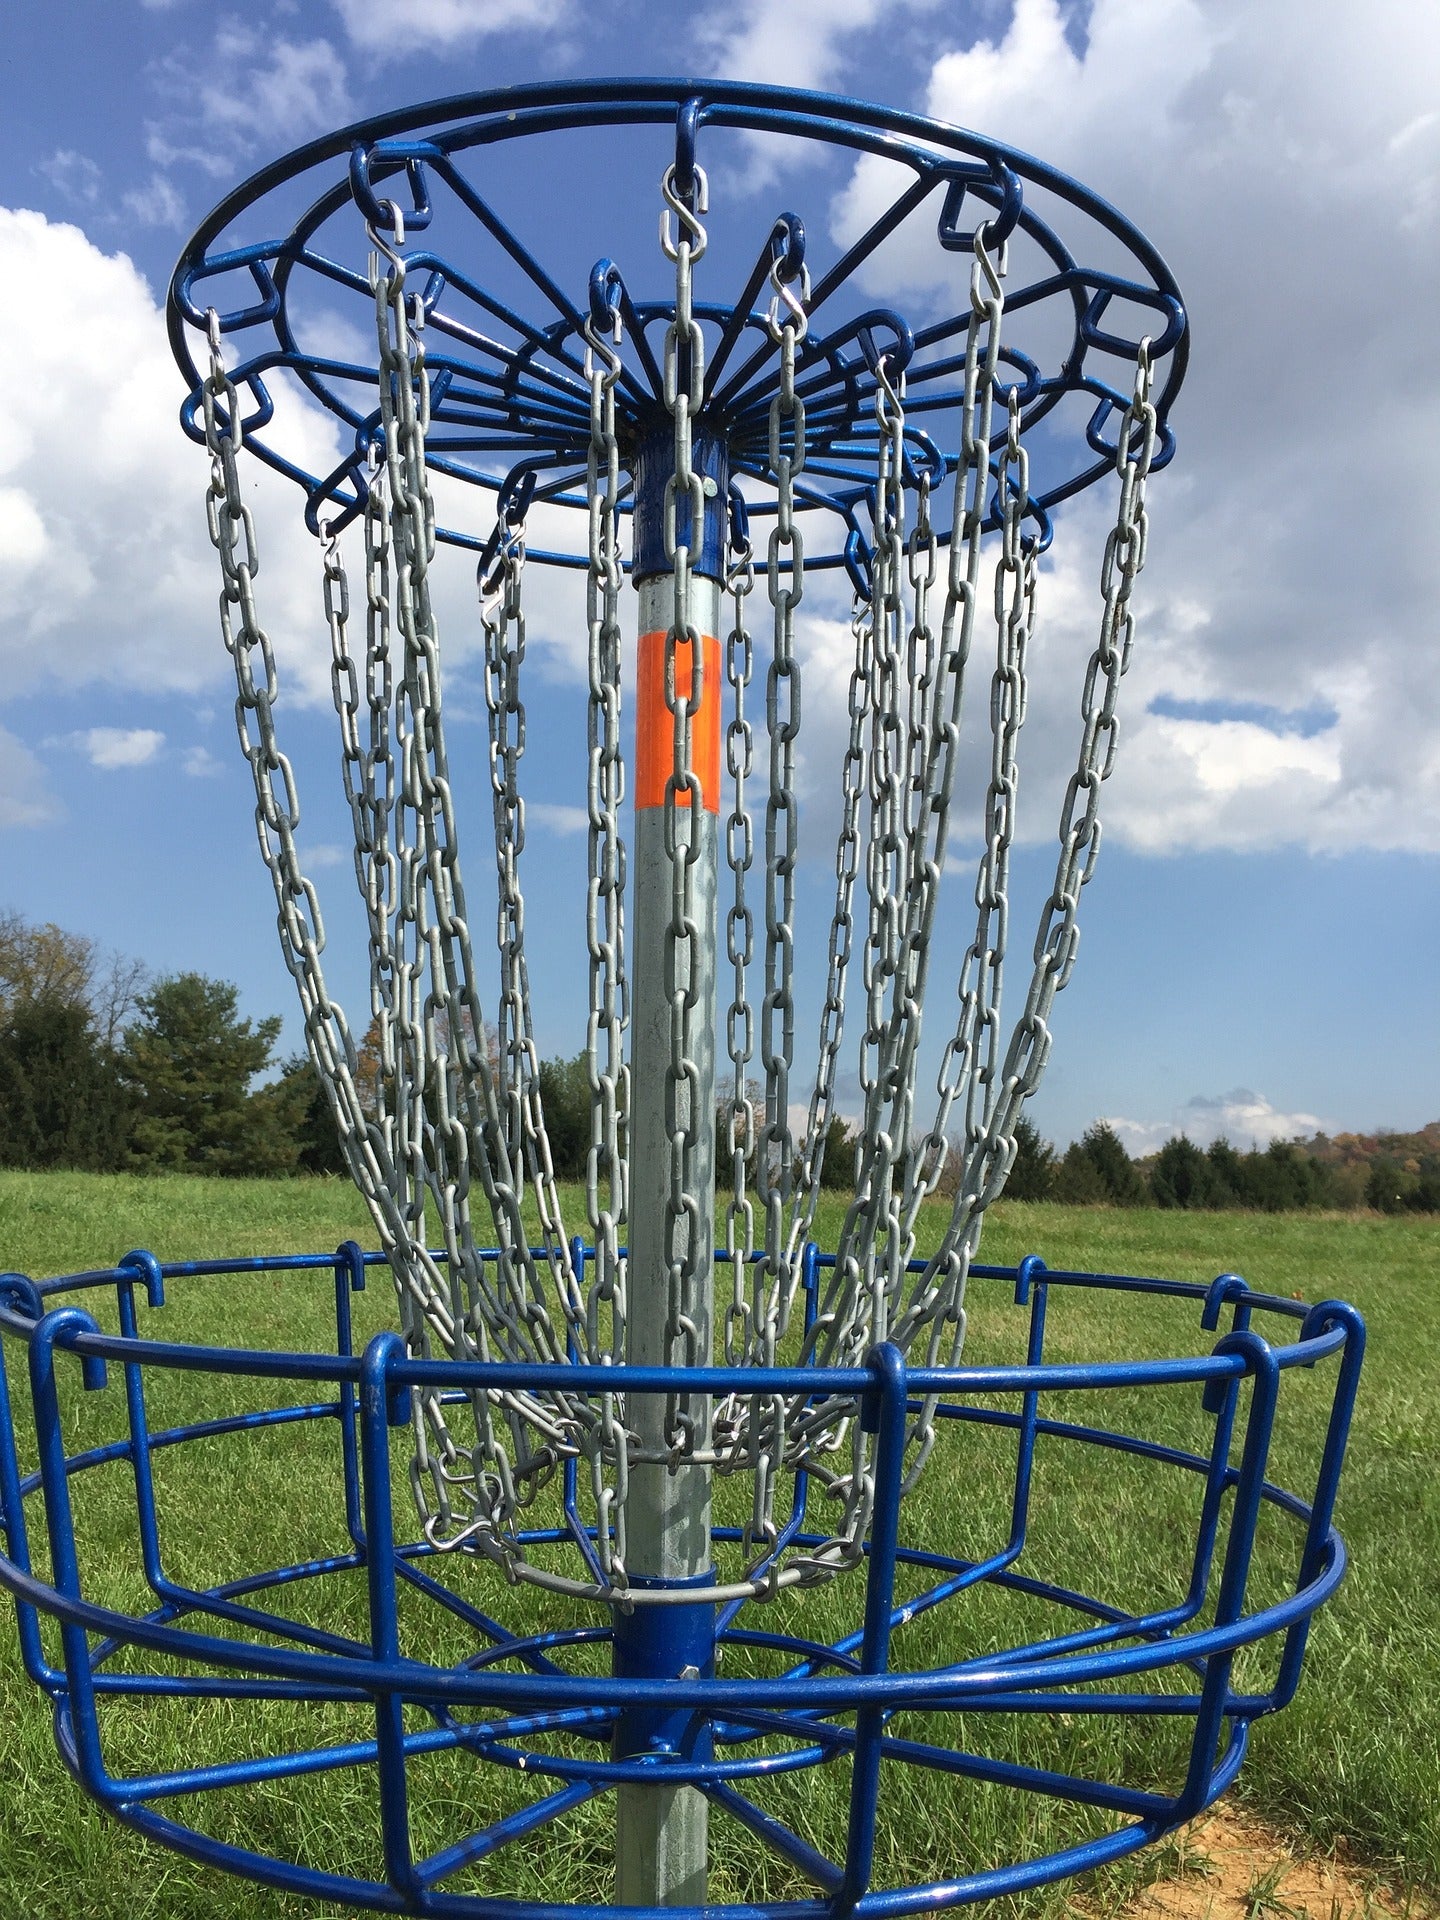 Frisbee golf basket, enlarge basket